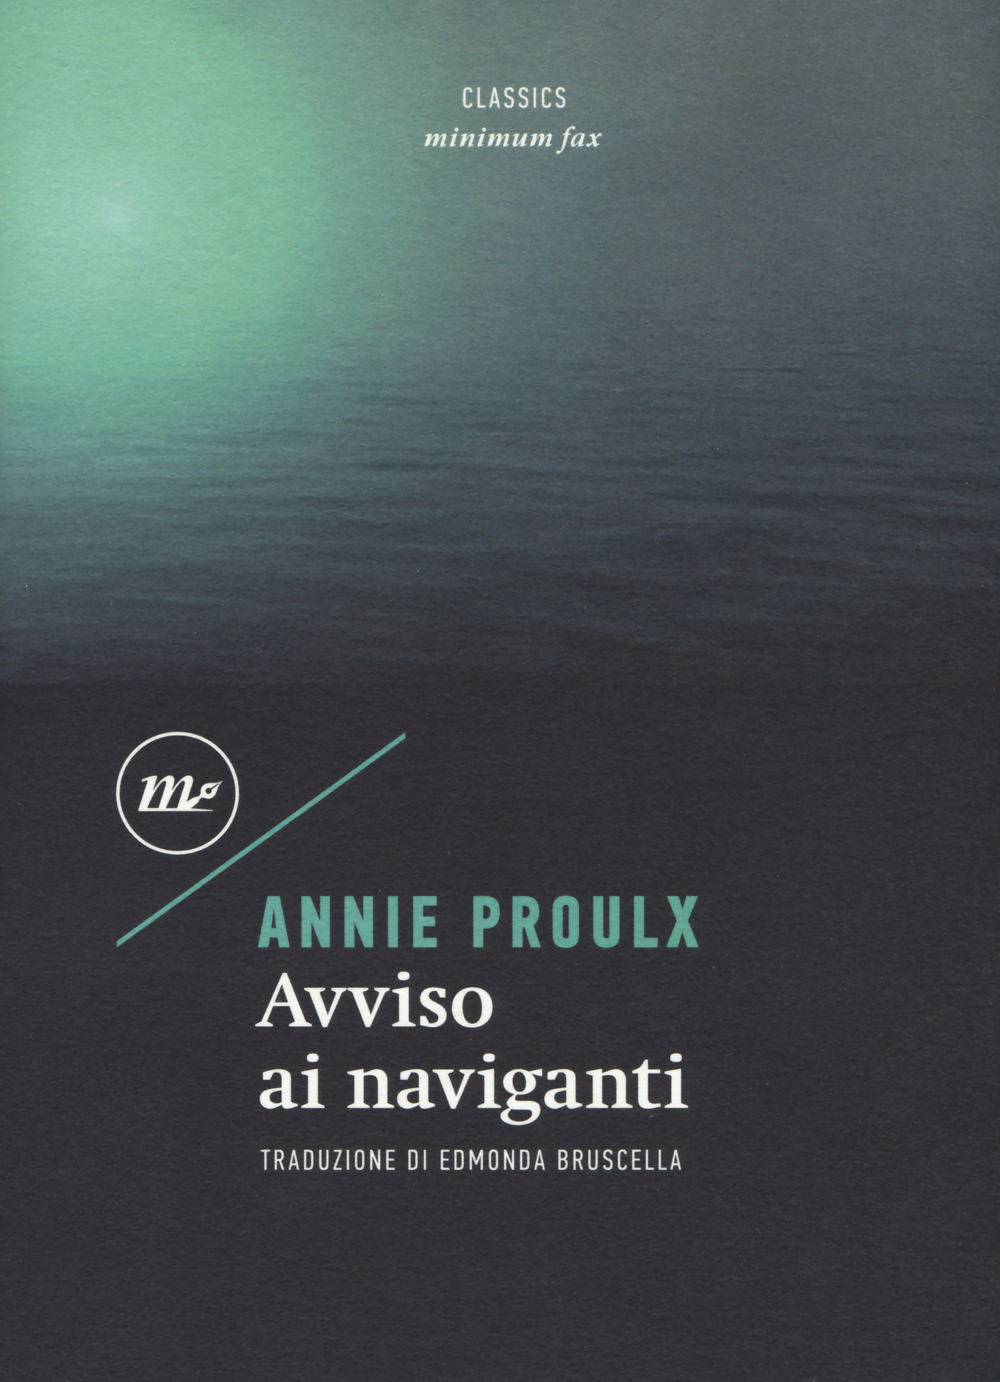 Avviso ai naviganti - E. Annie Proulx - Minimum Fax